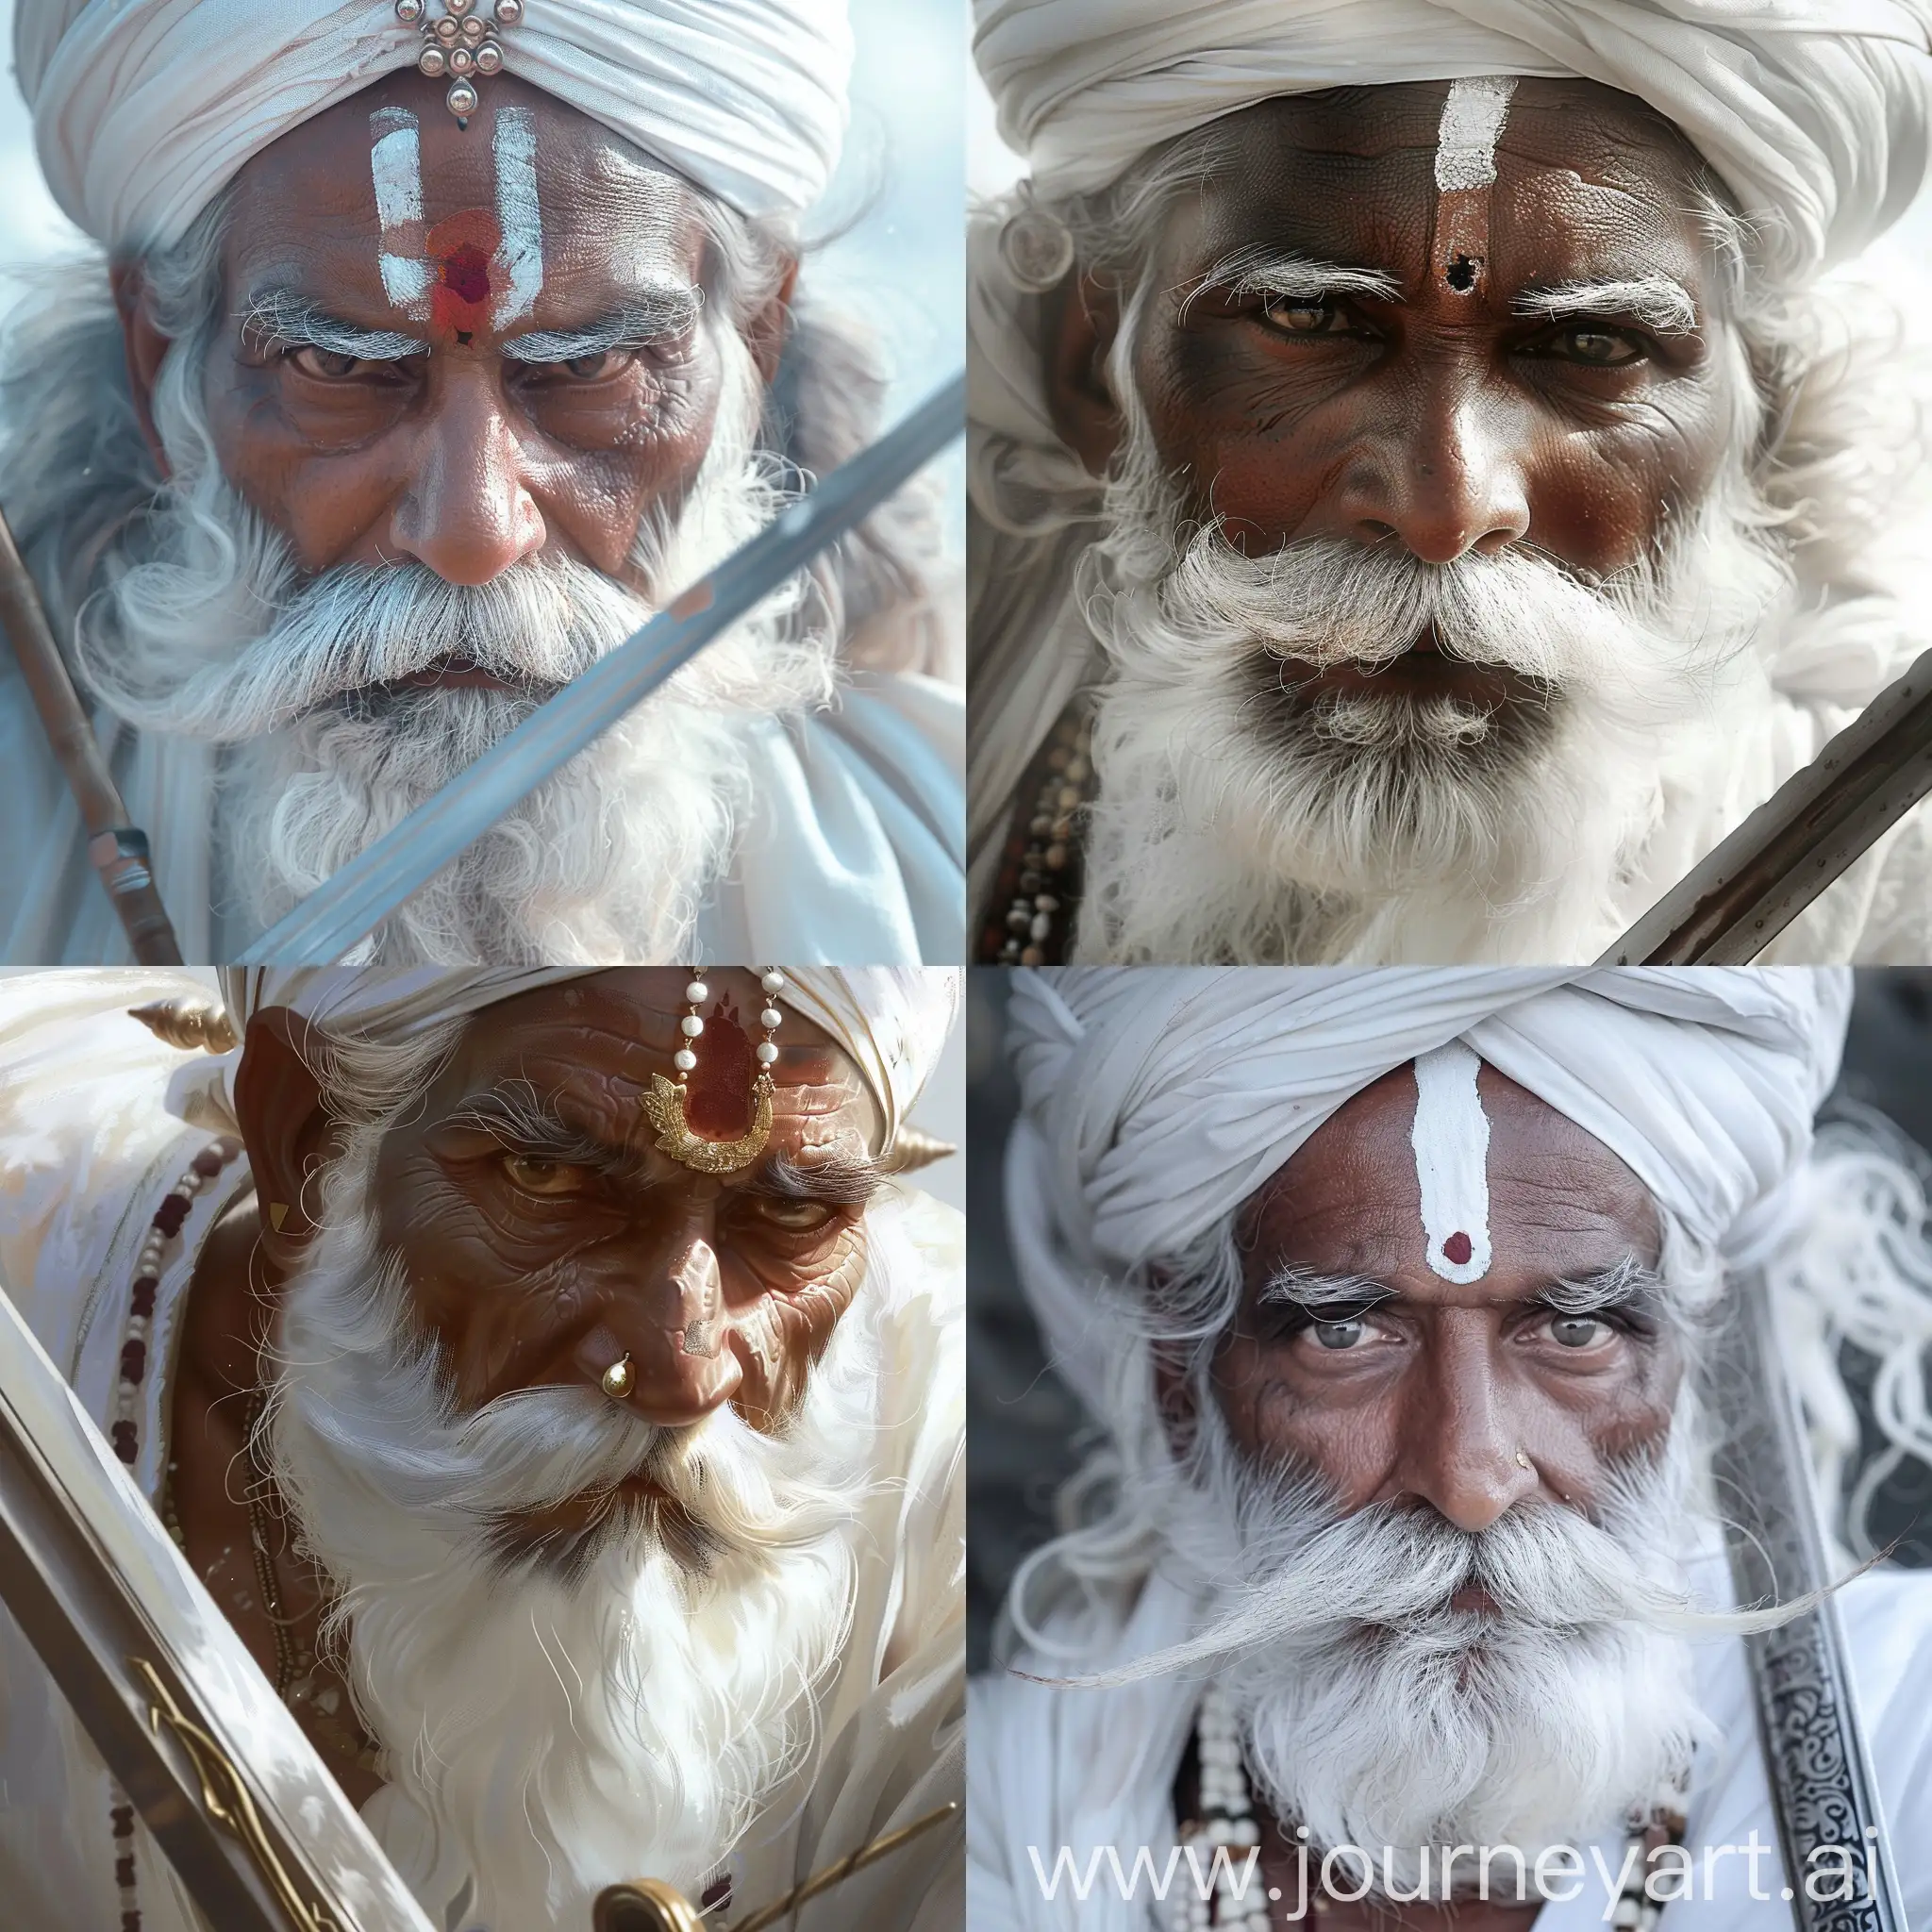 Historical-Figure-Durgadas-Rathore-Holding-Sword-in-White-Rajasthani-Attire